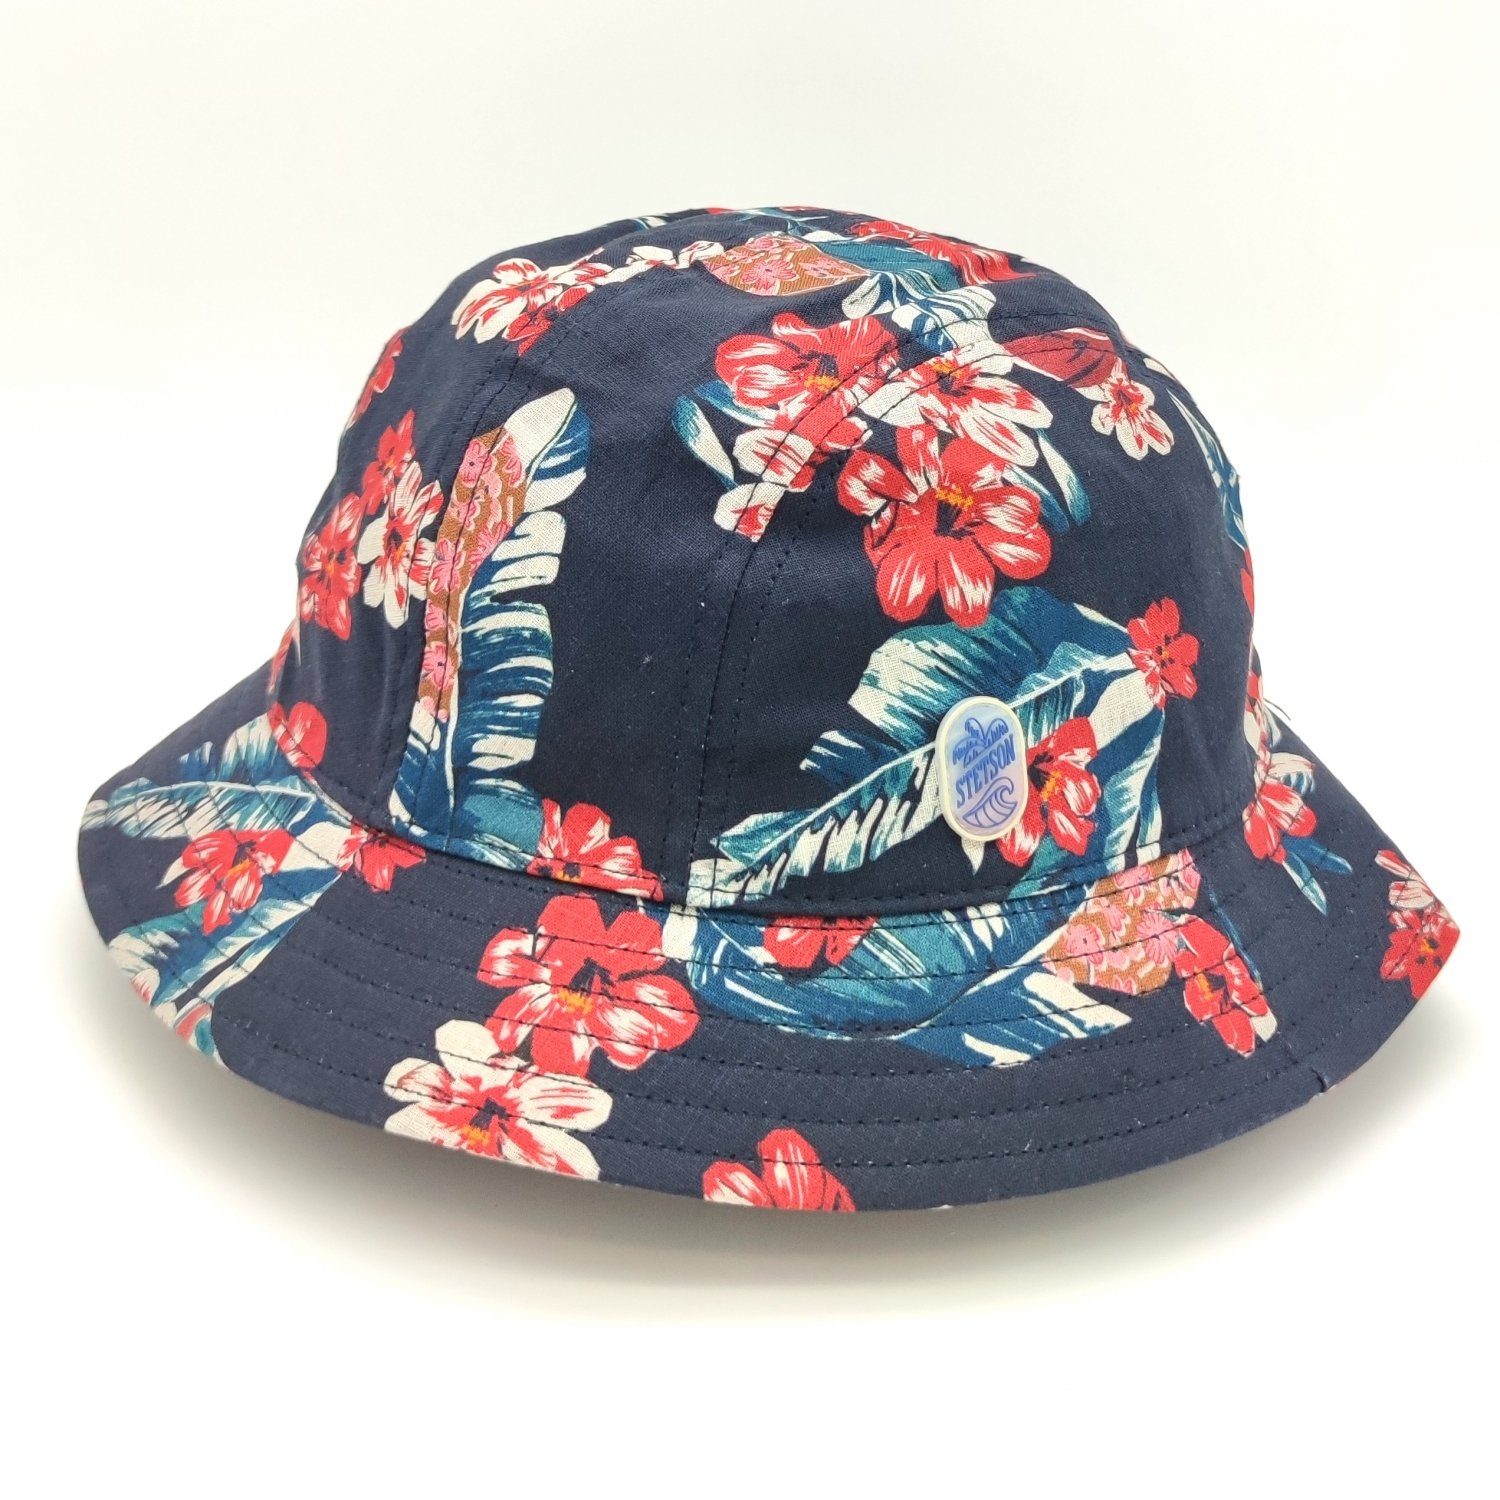 Stetson Sonnenhut Bucket Hat multicolor